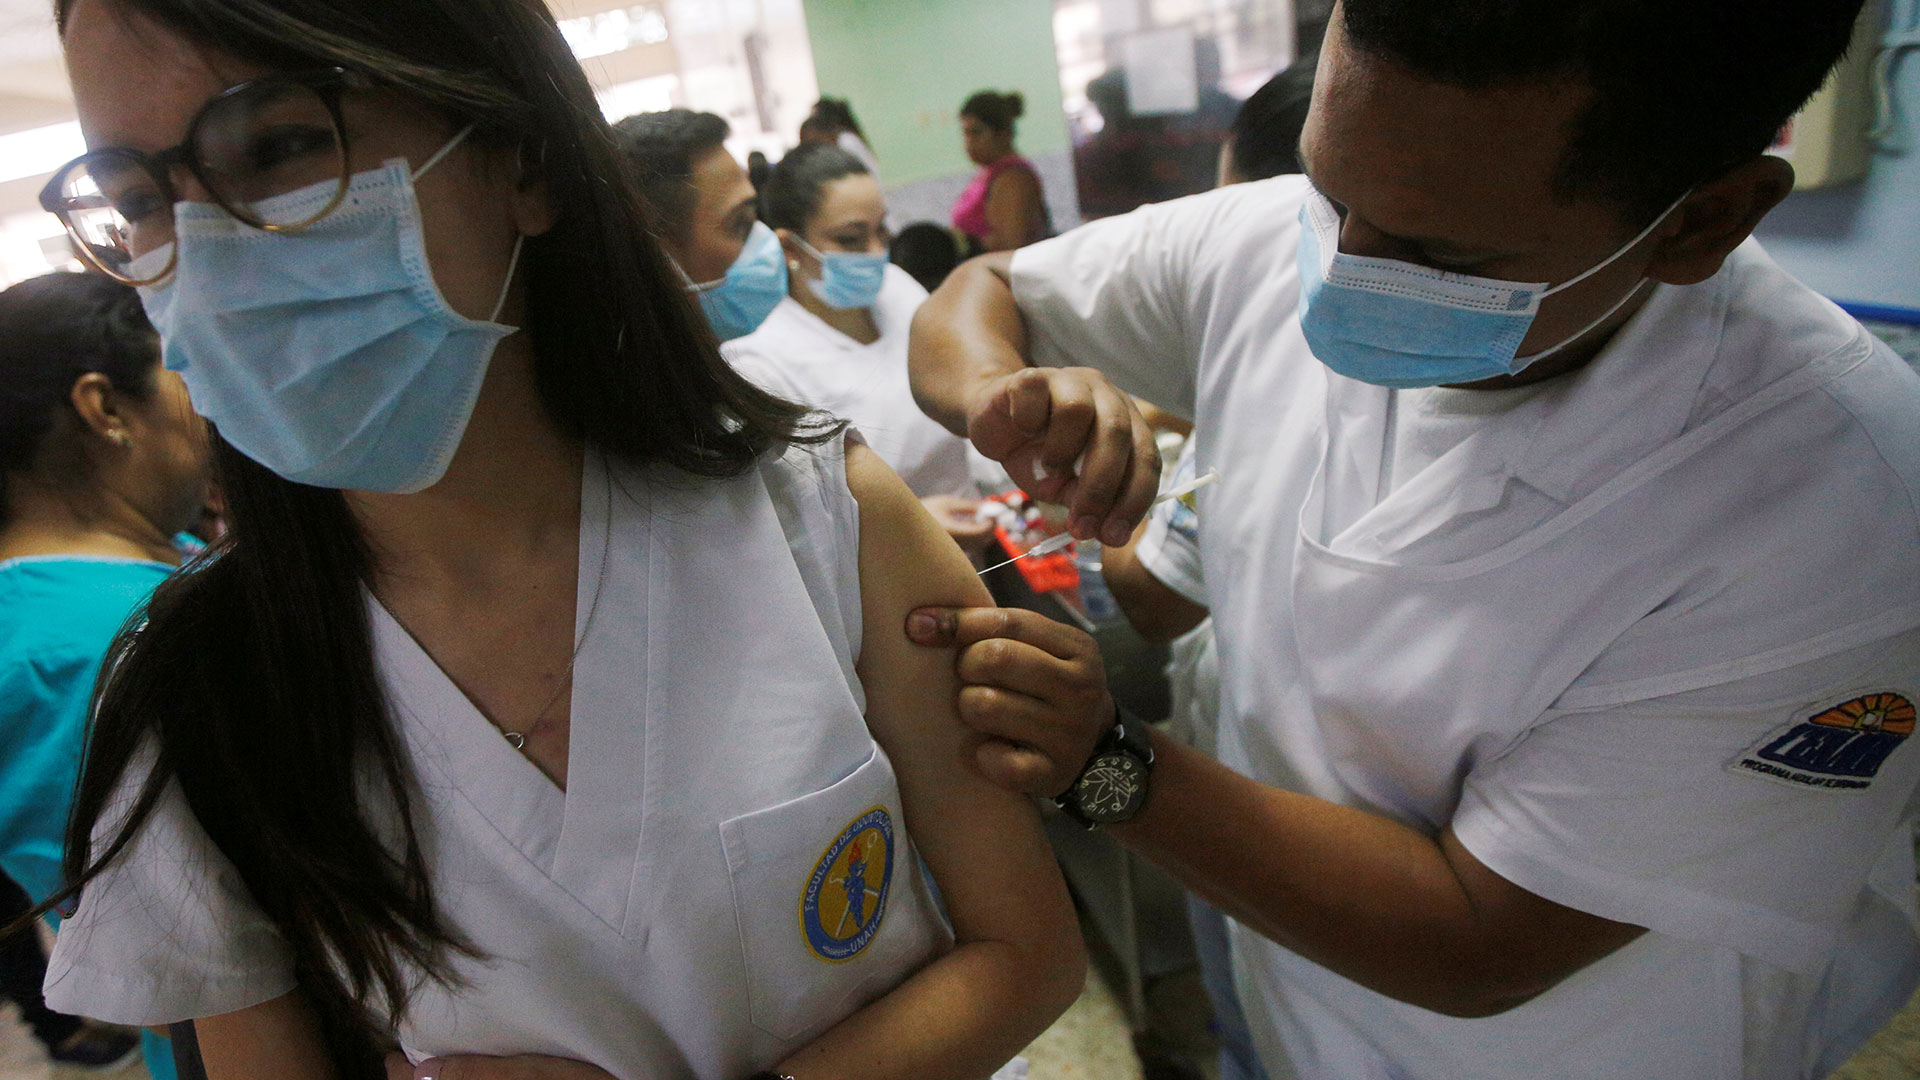 Esta temporada podría haber un mayor número de casos porque mucha gente no está vacunada. (Foto: Reuters)